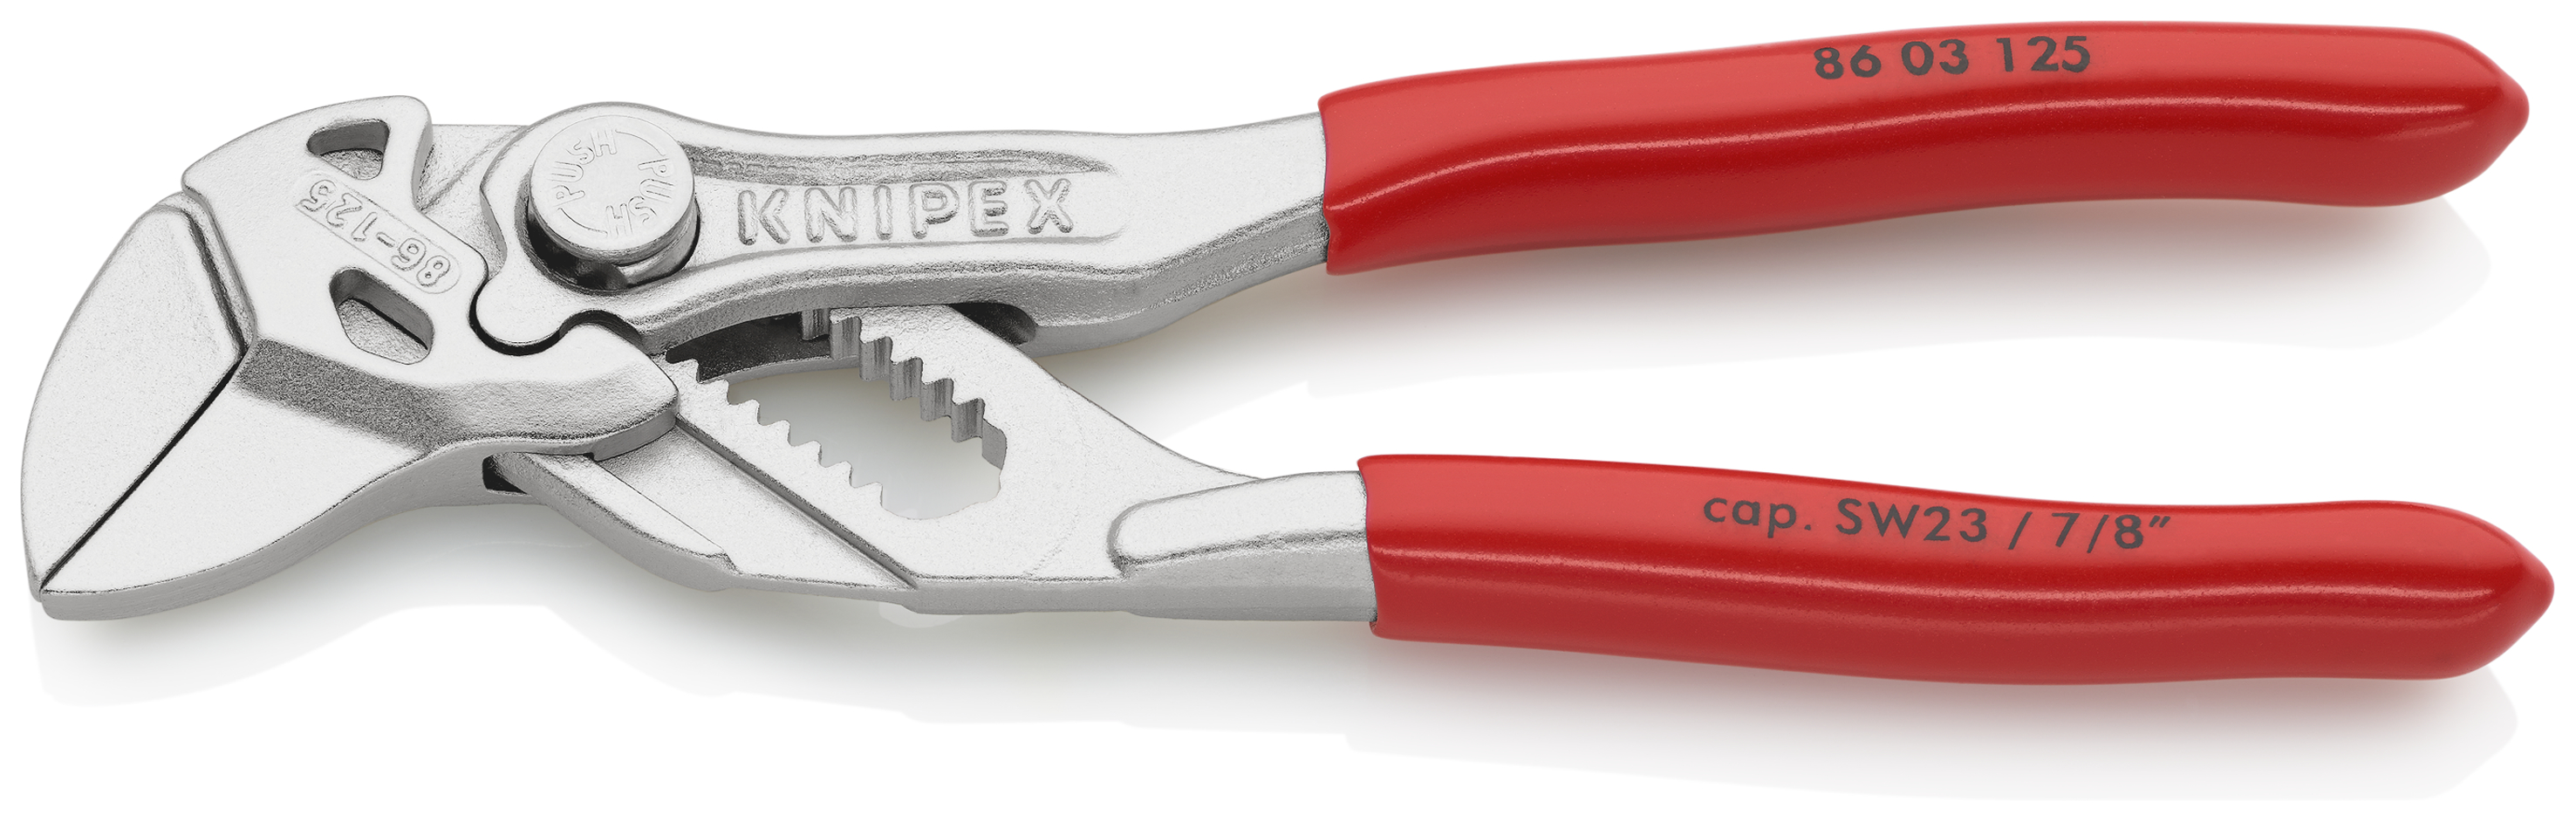 KNIPEX 86 03 125 Zangenschlüssel Zange und Schraubenschlüssel in | CBdirekt  Profi-Shop für Werkzeug / Sanitär / Garten